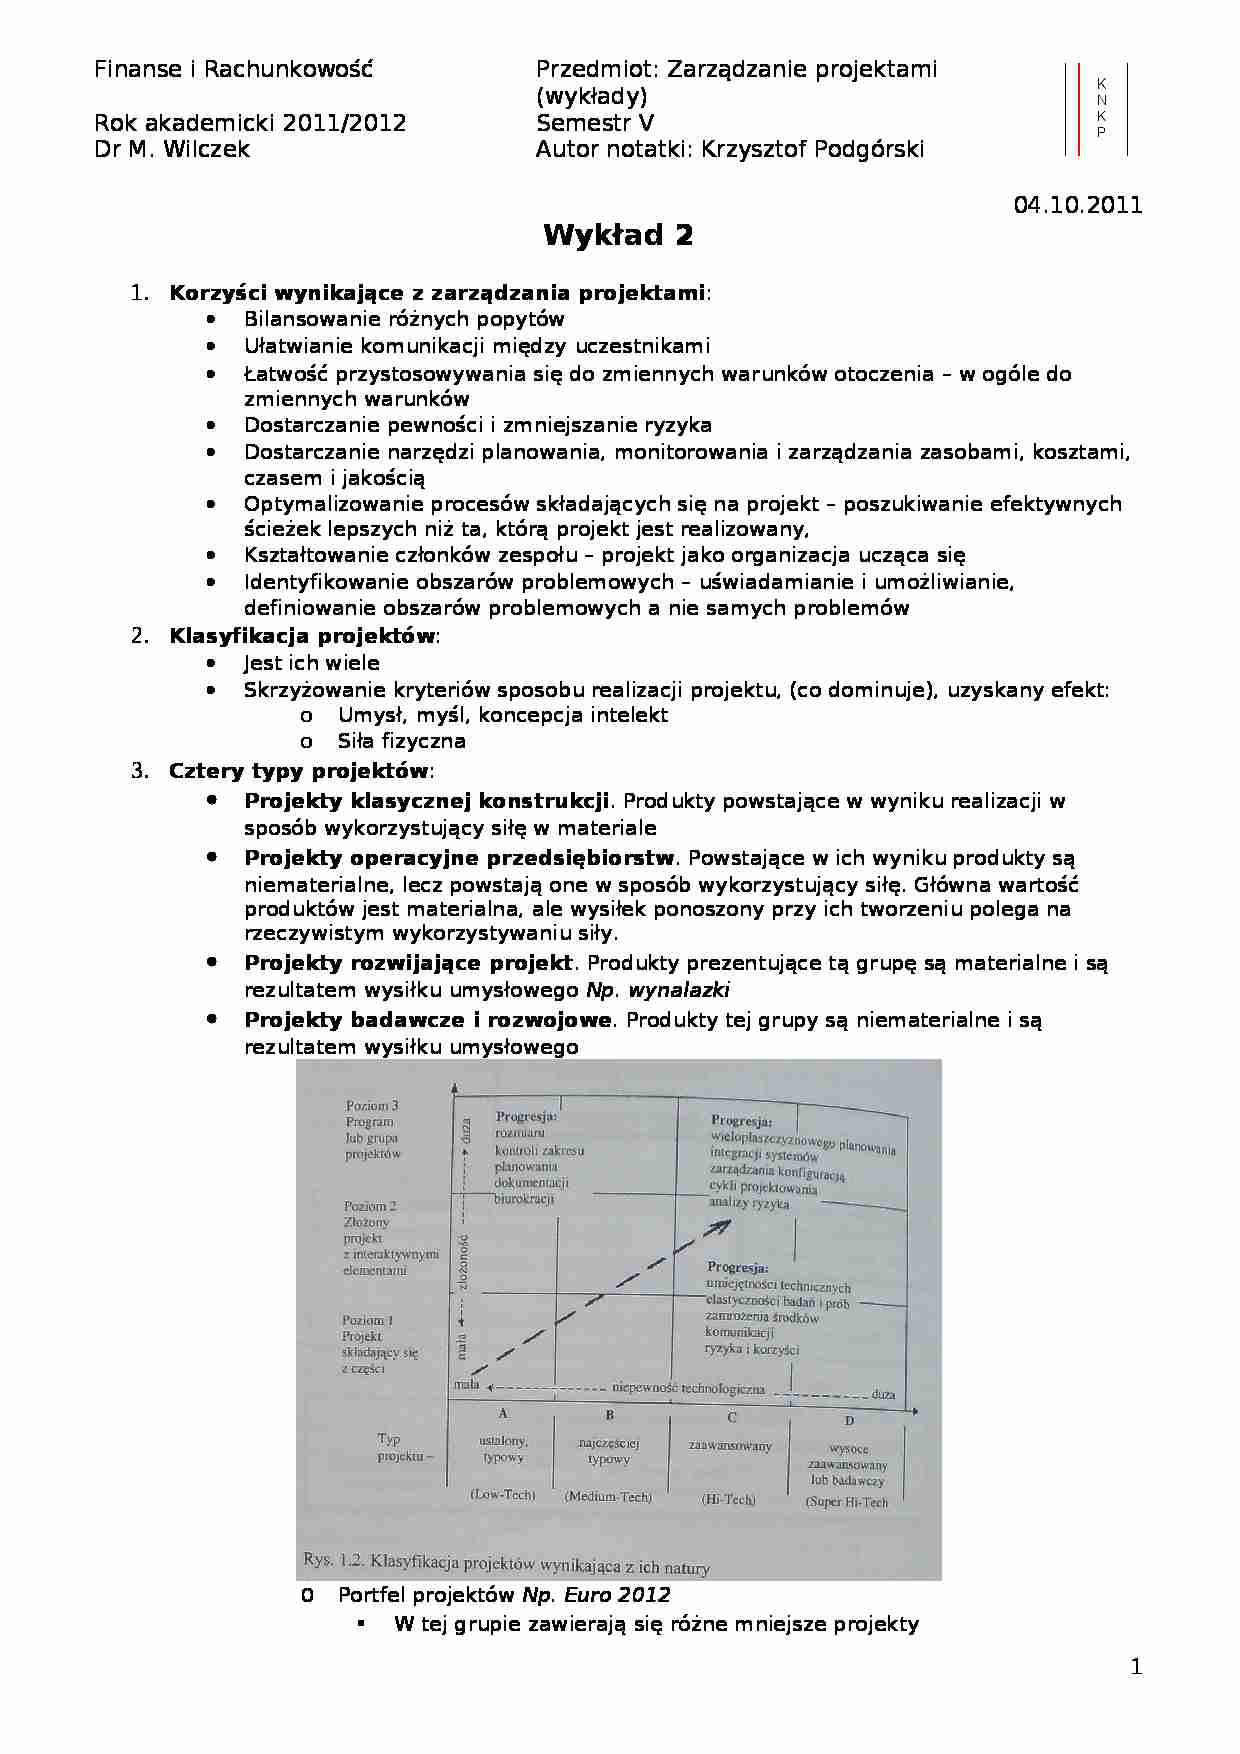 Projekt inwestycyjny - klasyfikacja, fazy i hierarchia - strona 1